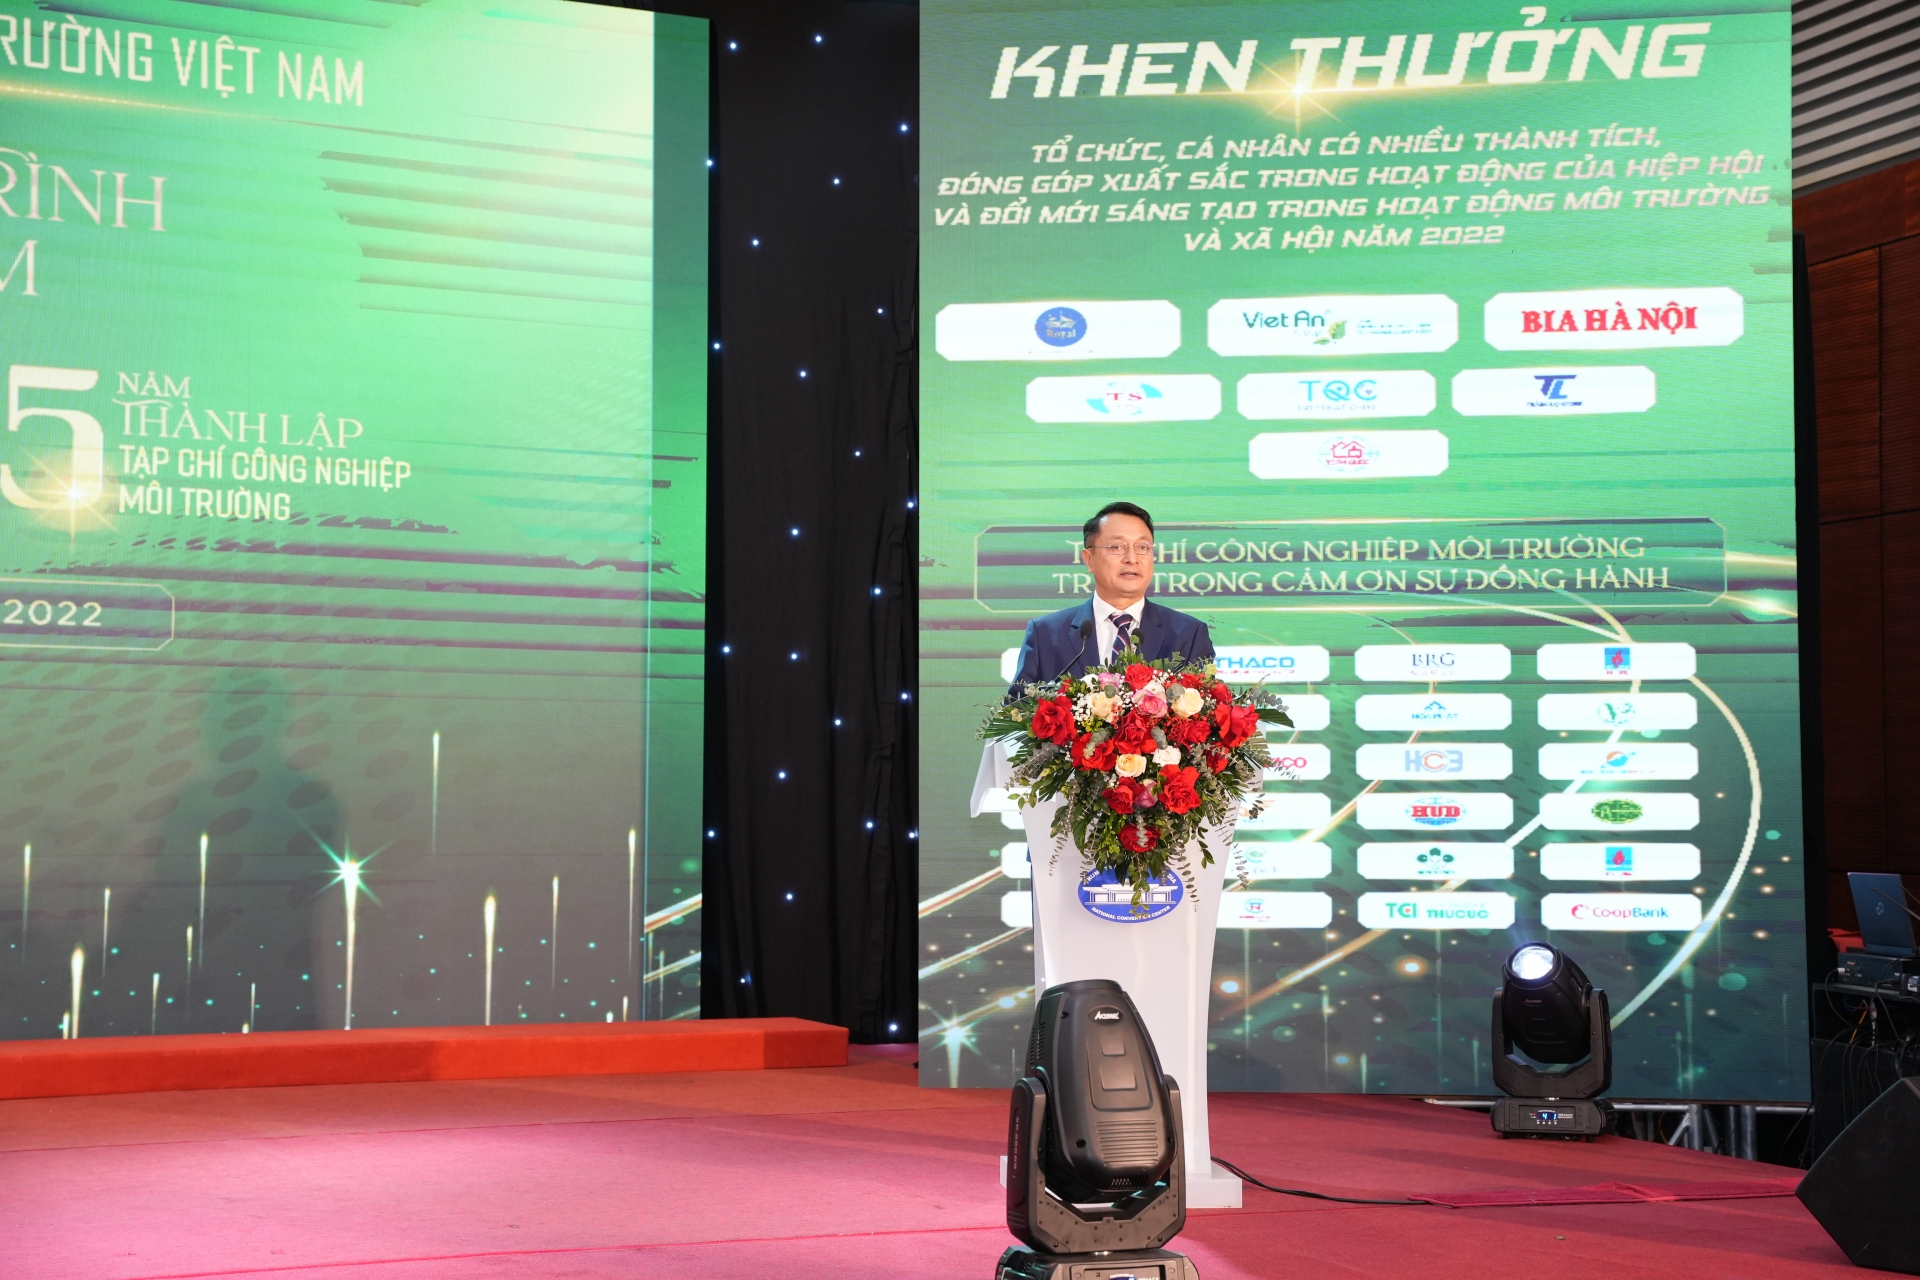 Toàn văn bài phát biểu của TS. Trần Văn Lượng tại chương trình kỷ niệm 10 năm thành lập Hiệp hội Công nghiệp môi trường Việt Nam